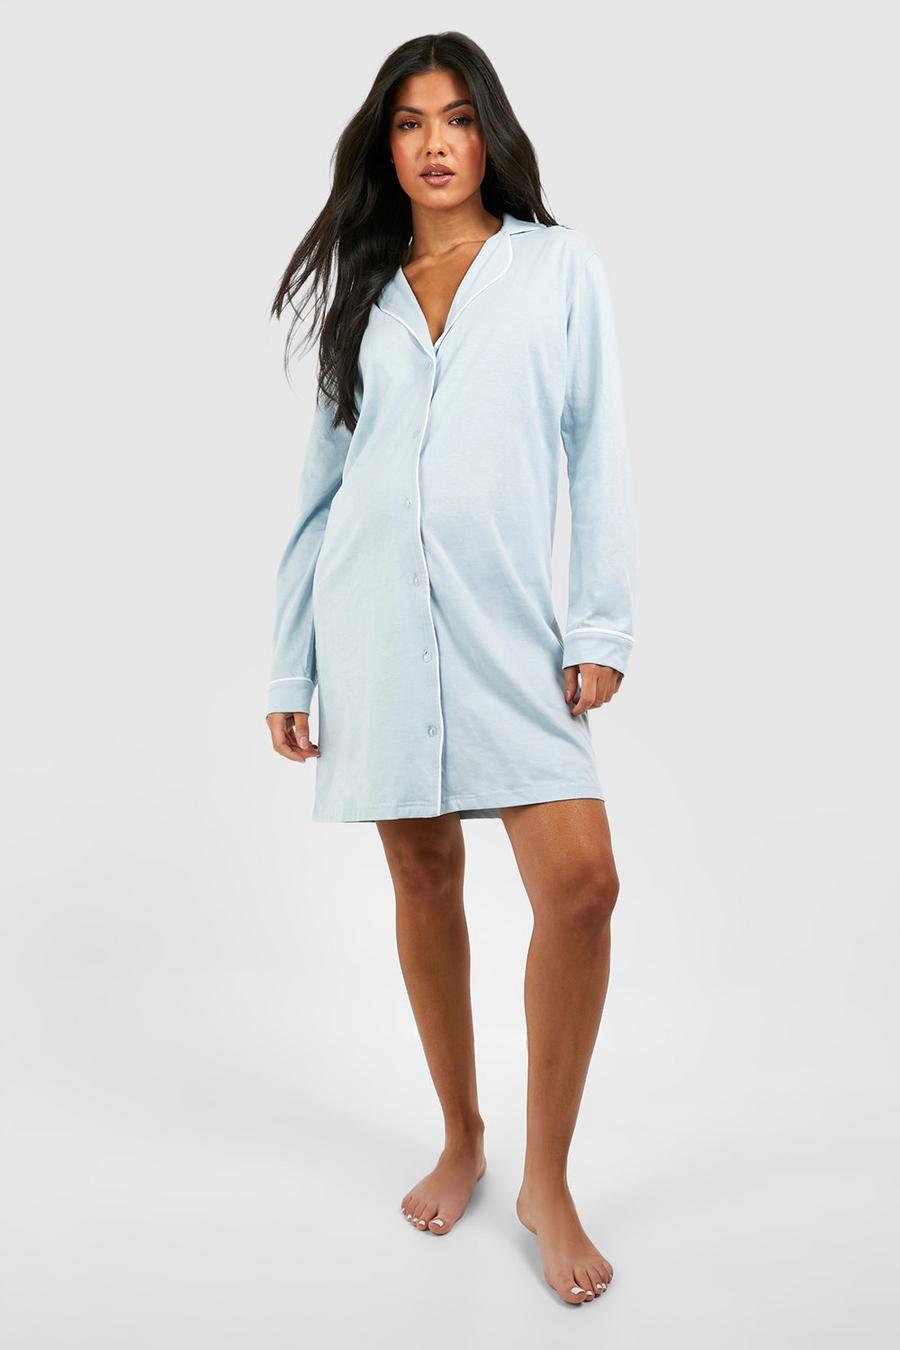 Maternity Nightwear -  Canada